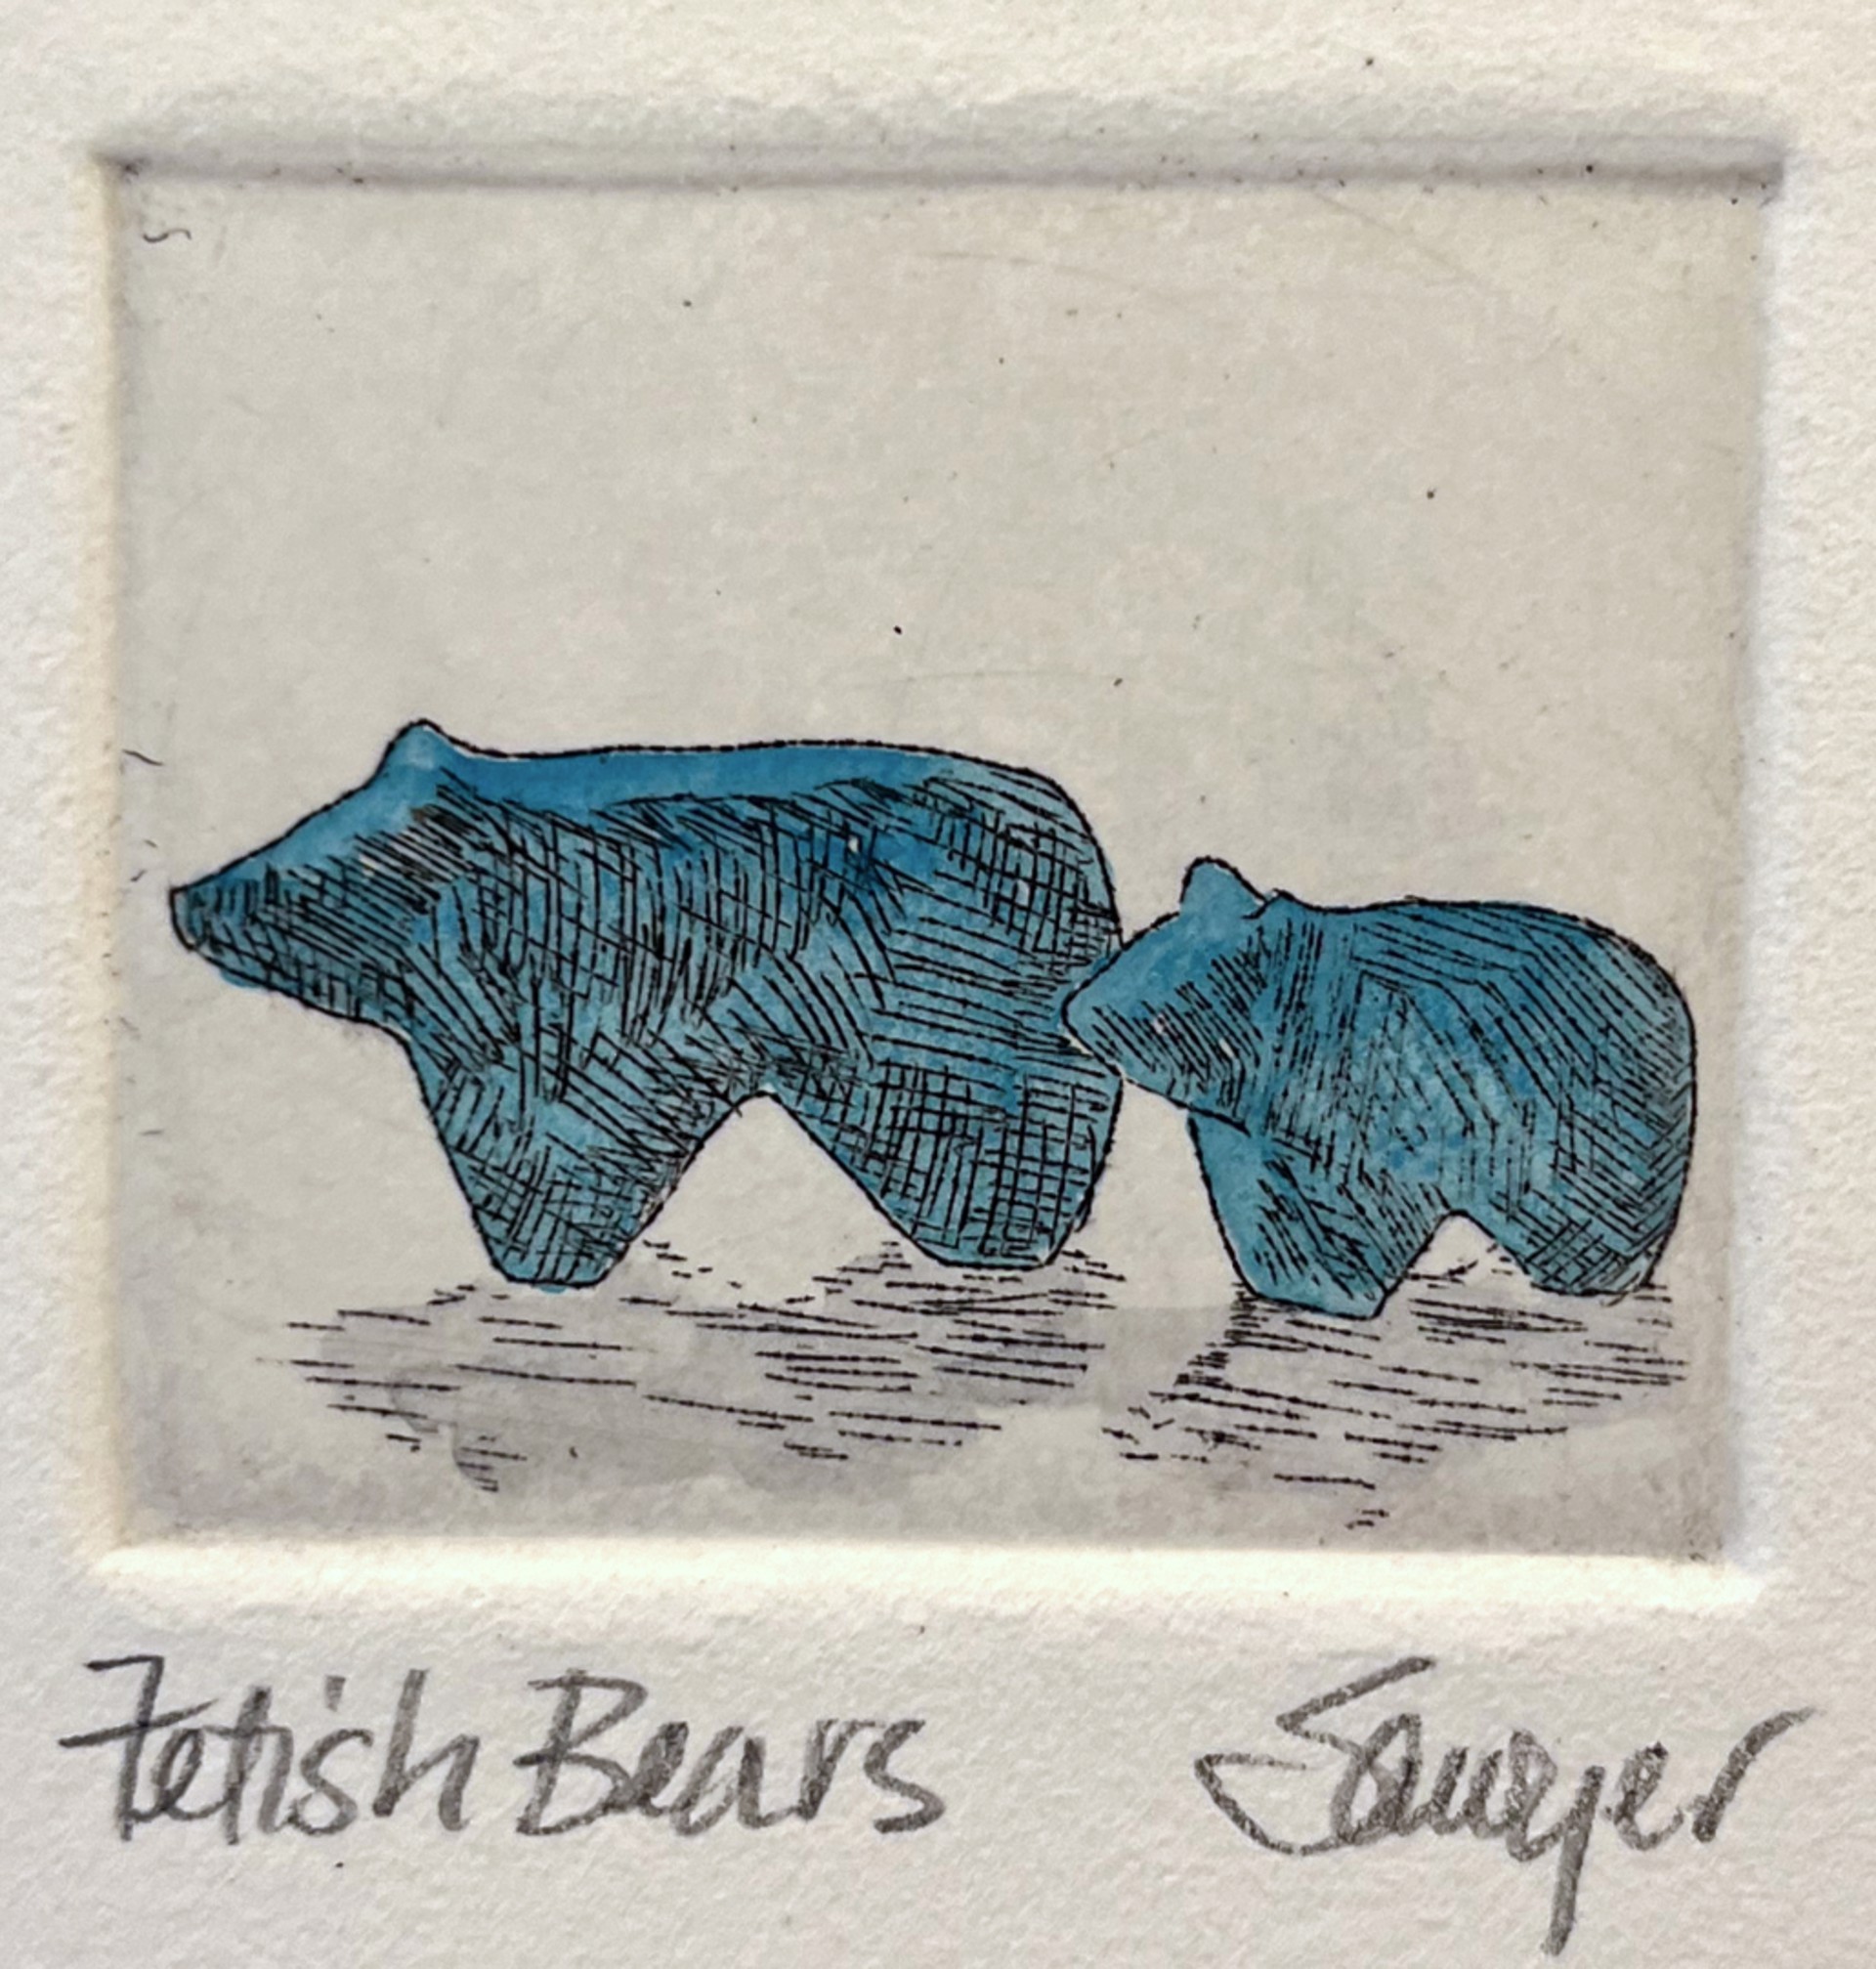 Fetish Bears (framed) by Anne Sawyer